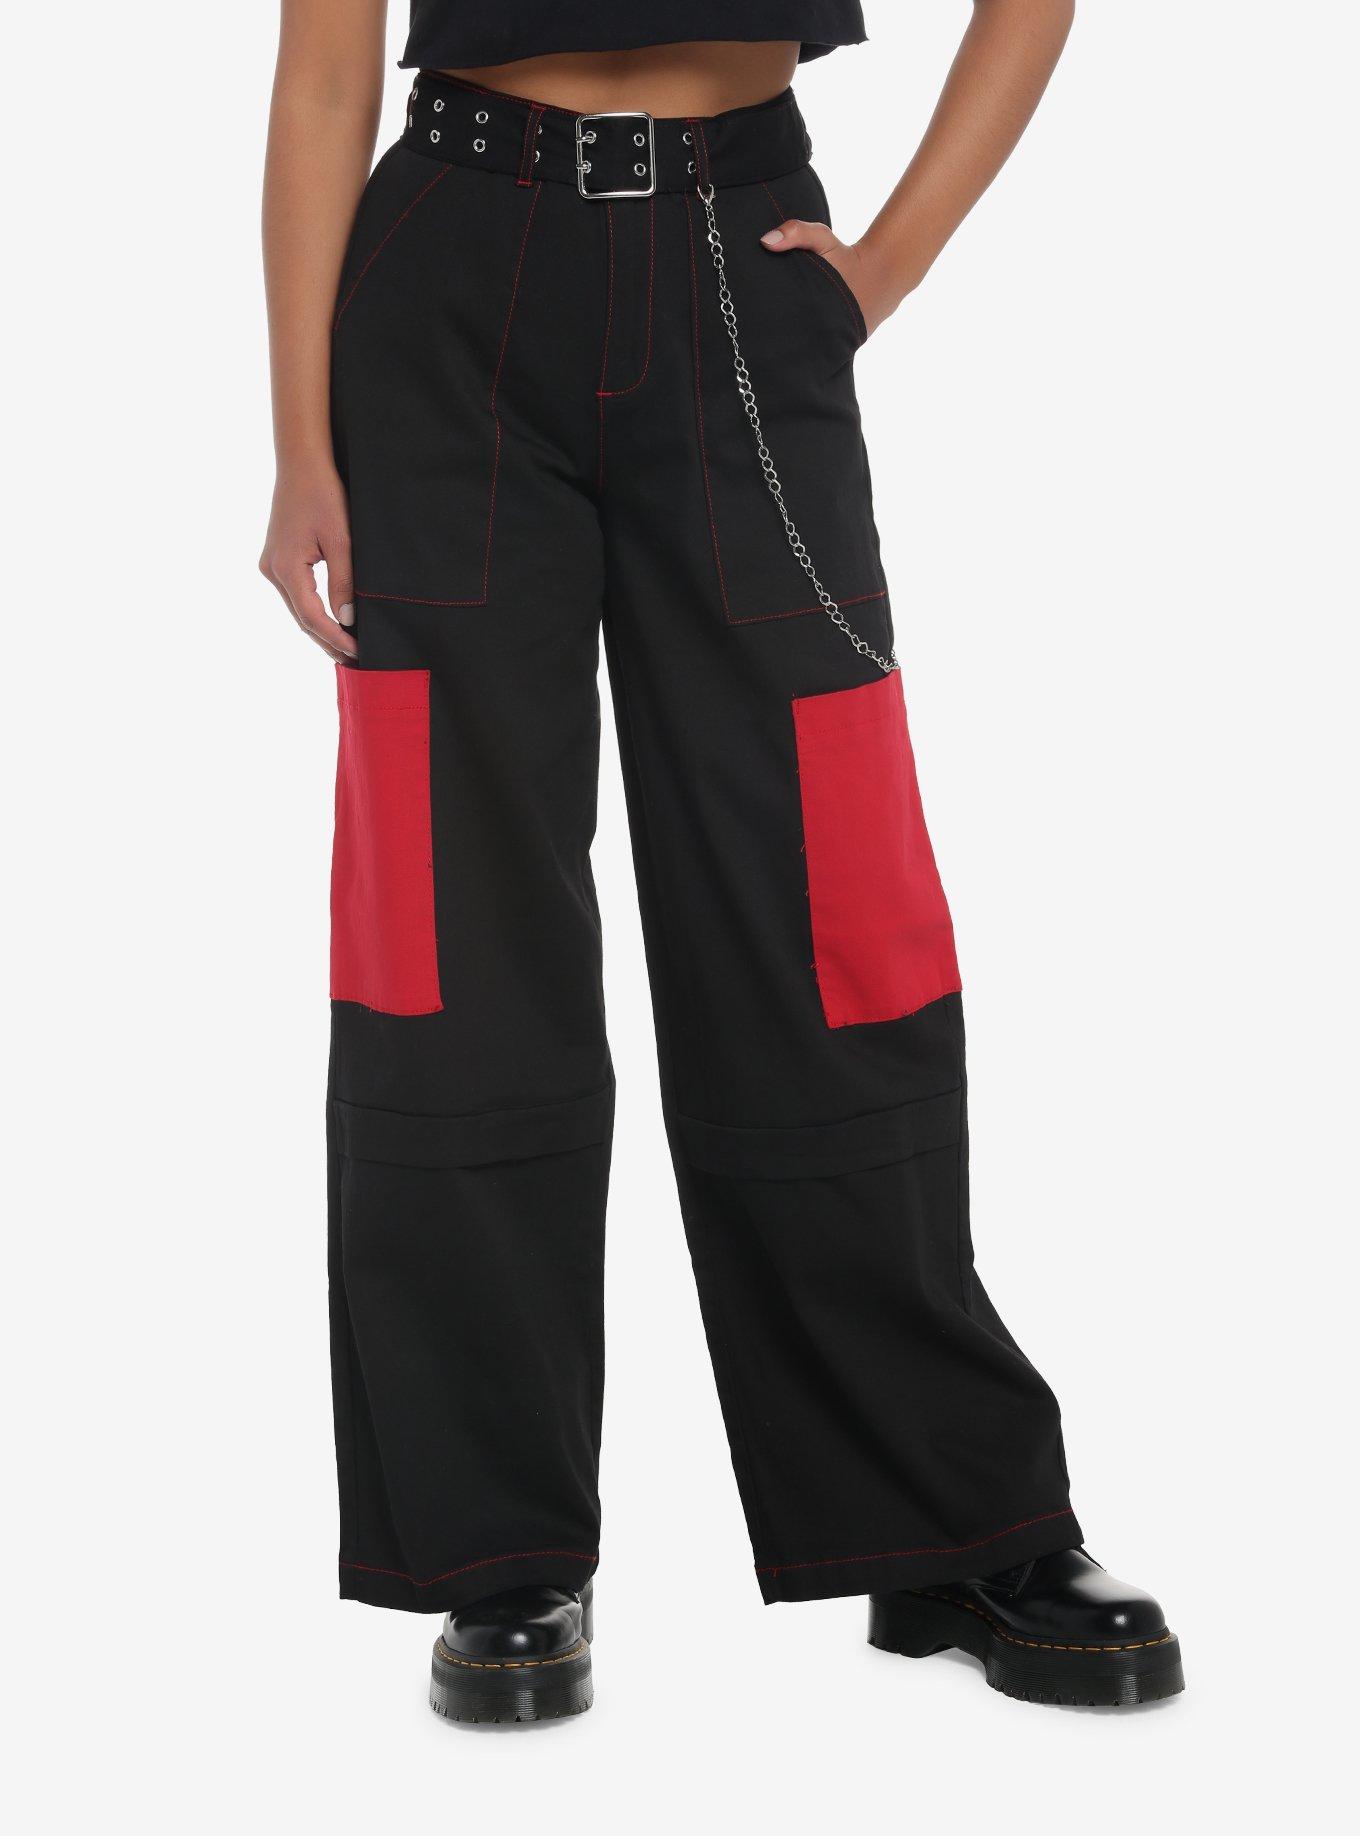  RYDCOT Cargo Pants Women Baggy Plus SizeSweatpants